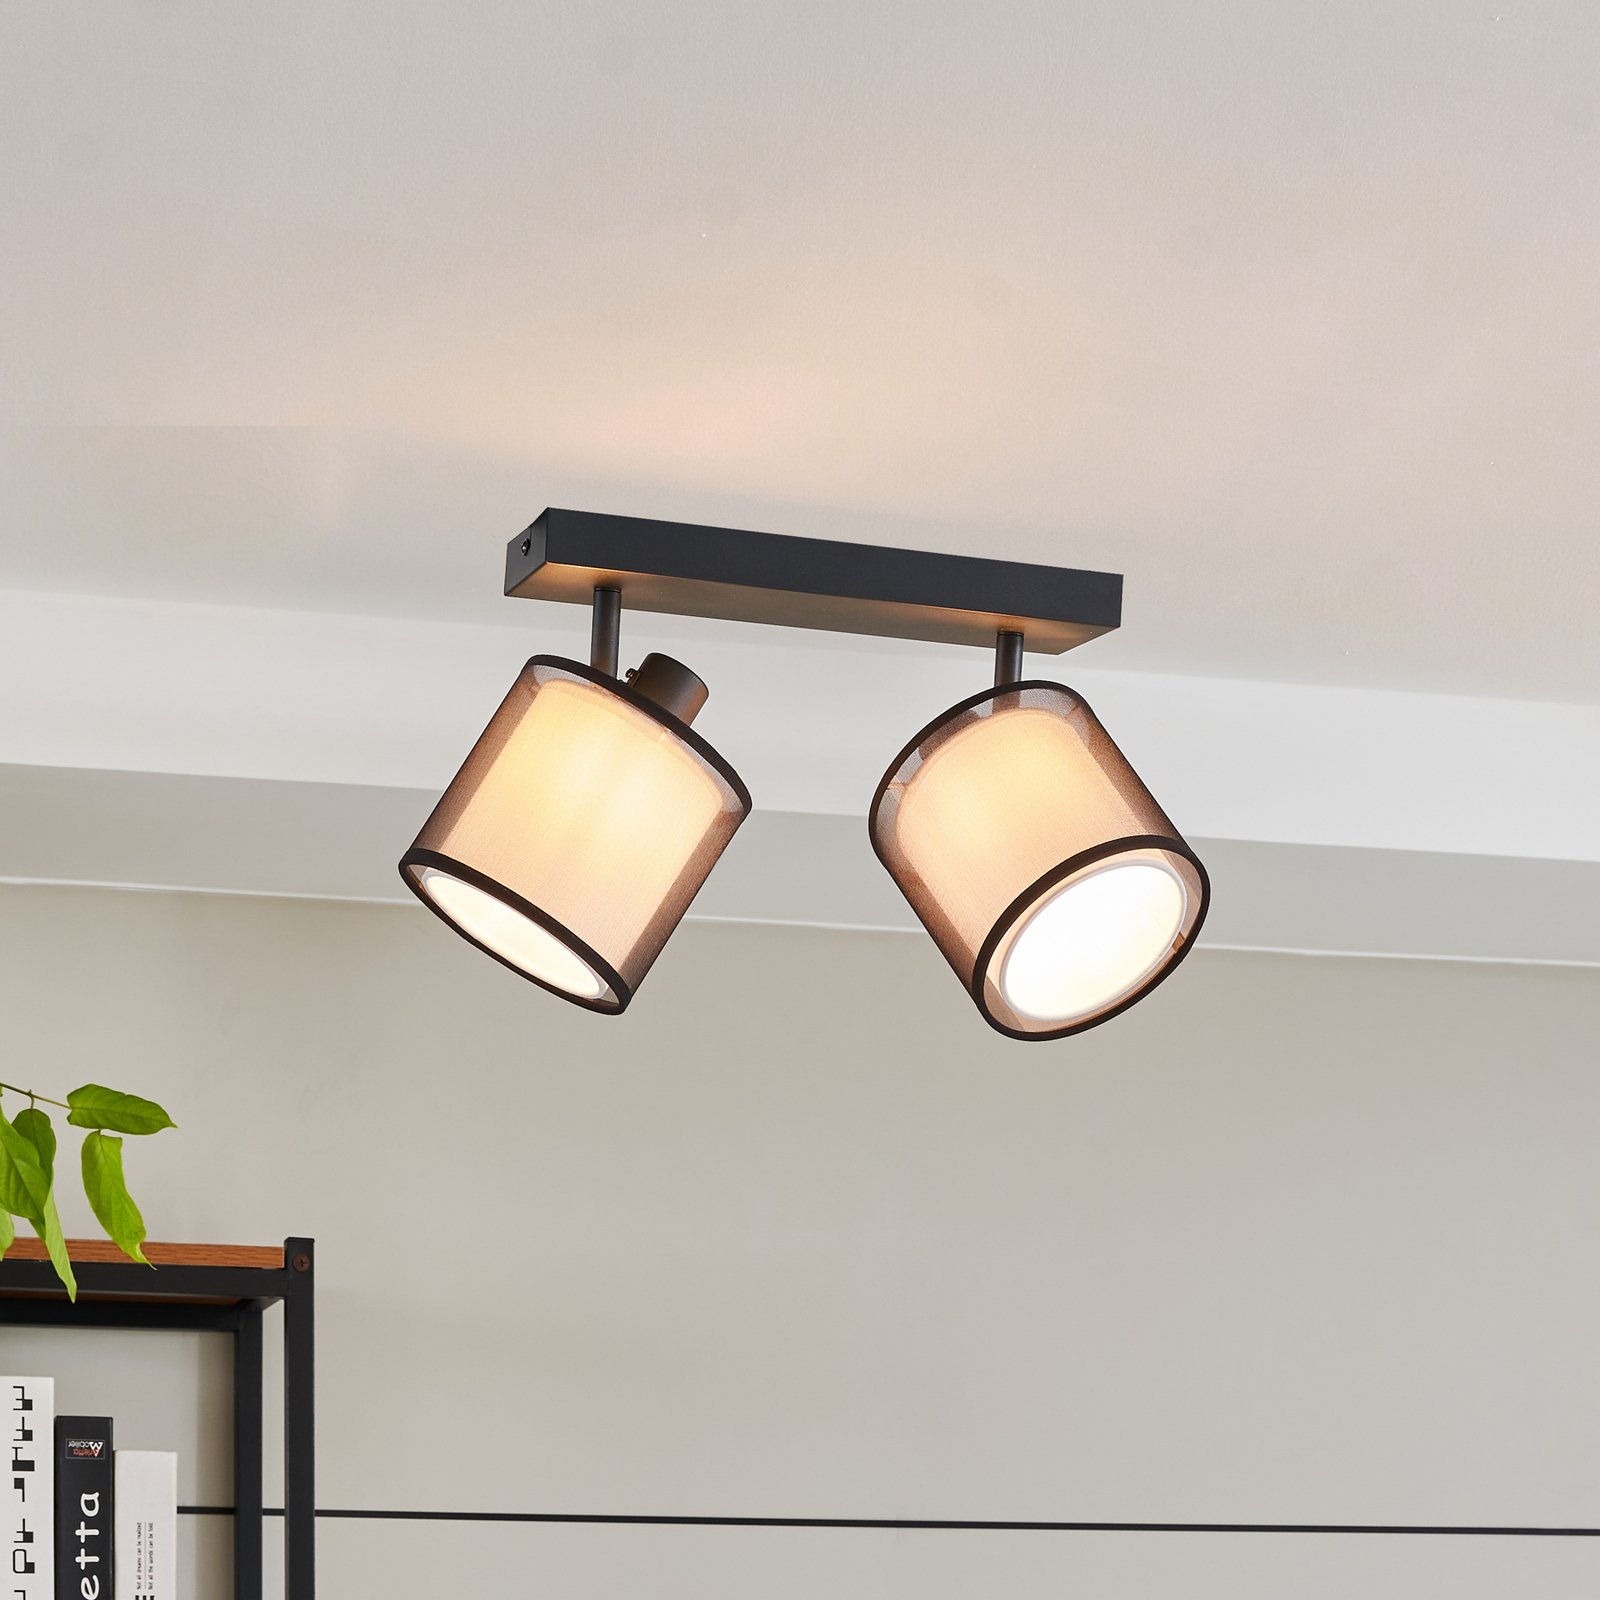 Lindby Chizoma downlight 2-bulb fabric lampshades